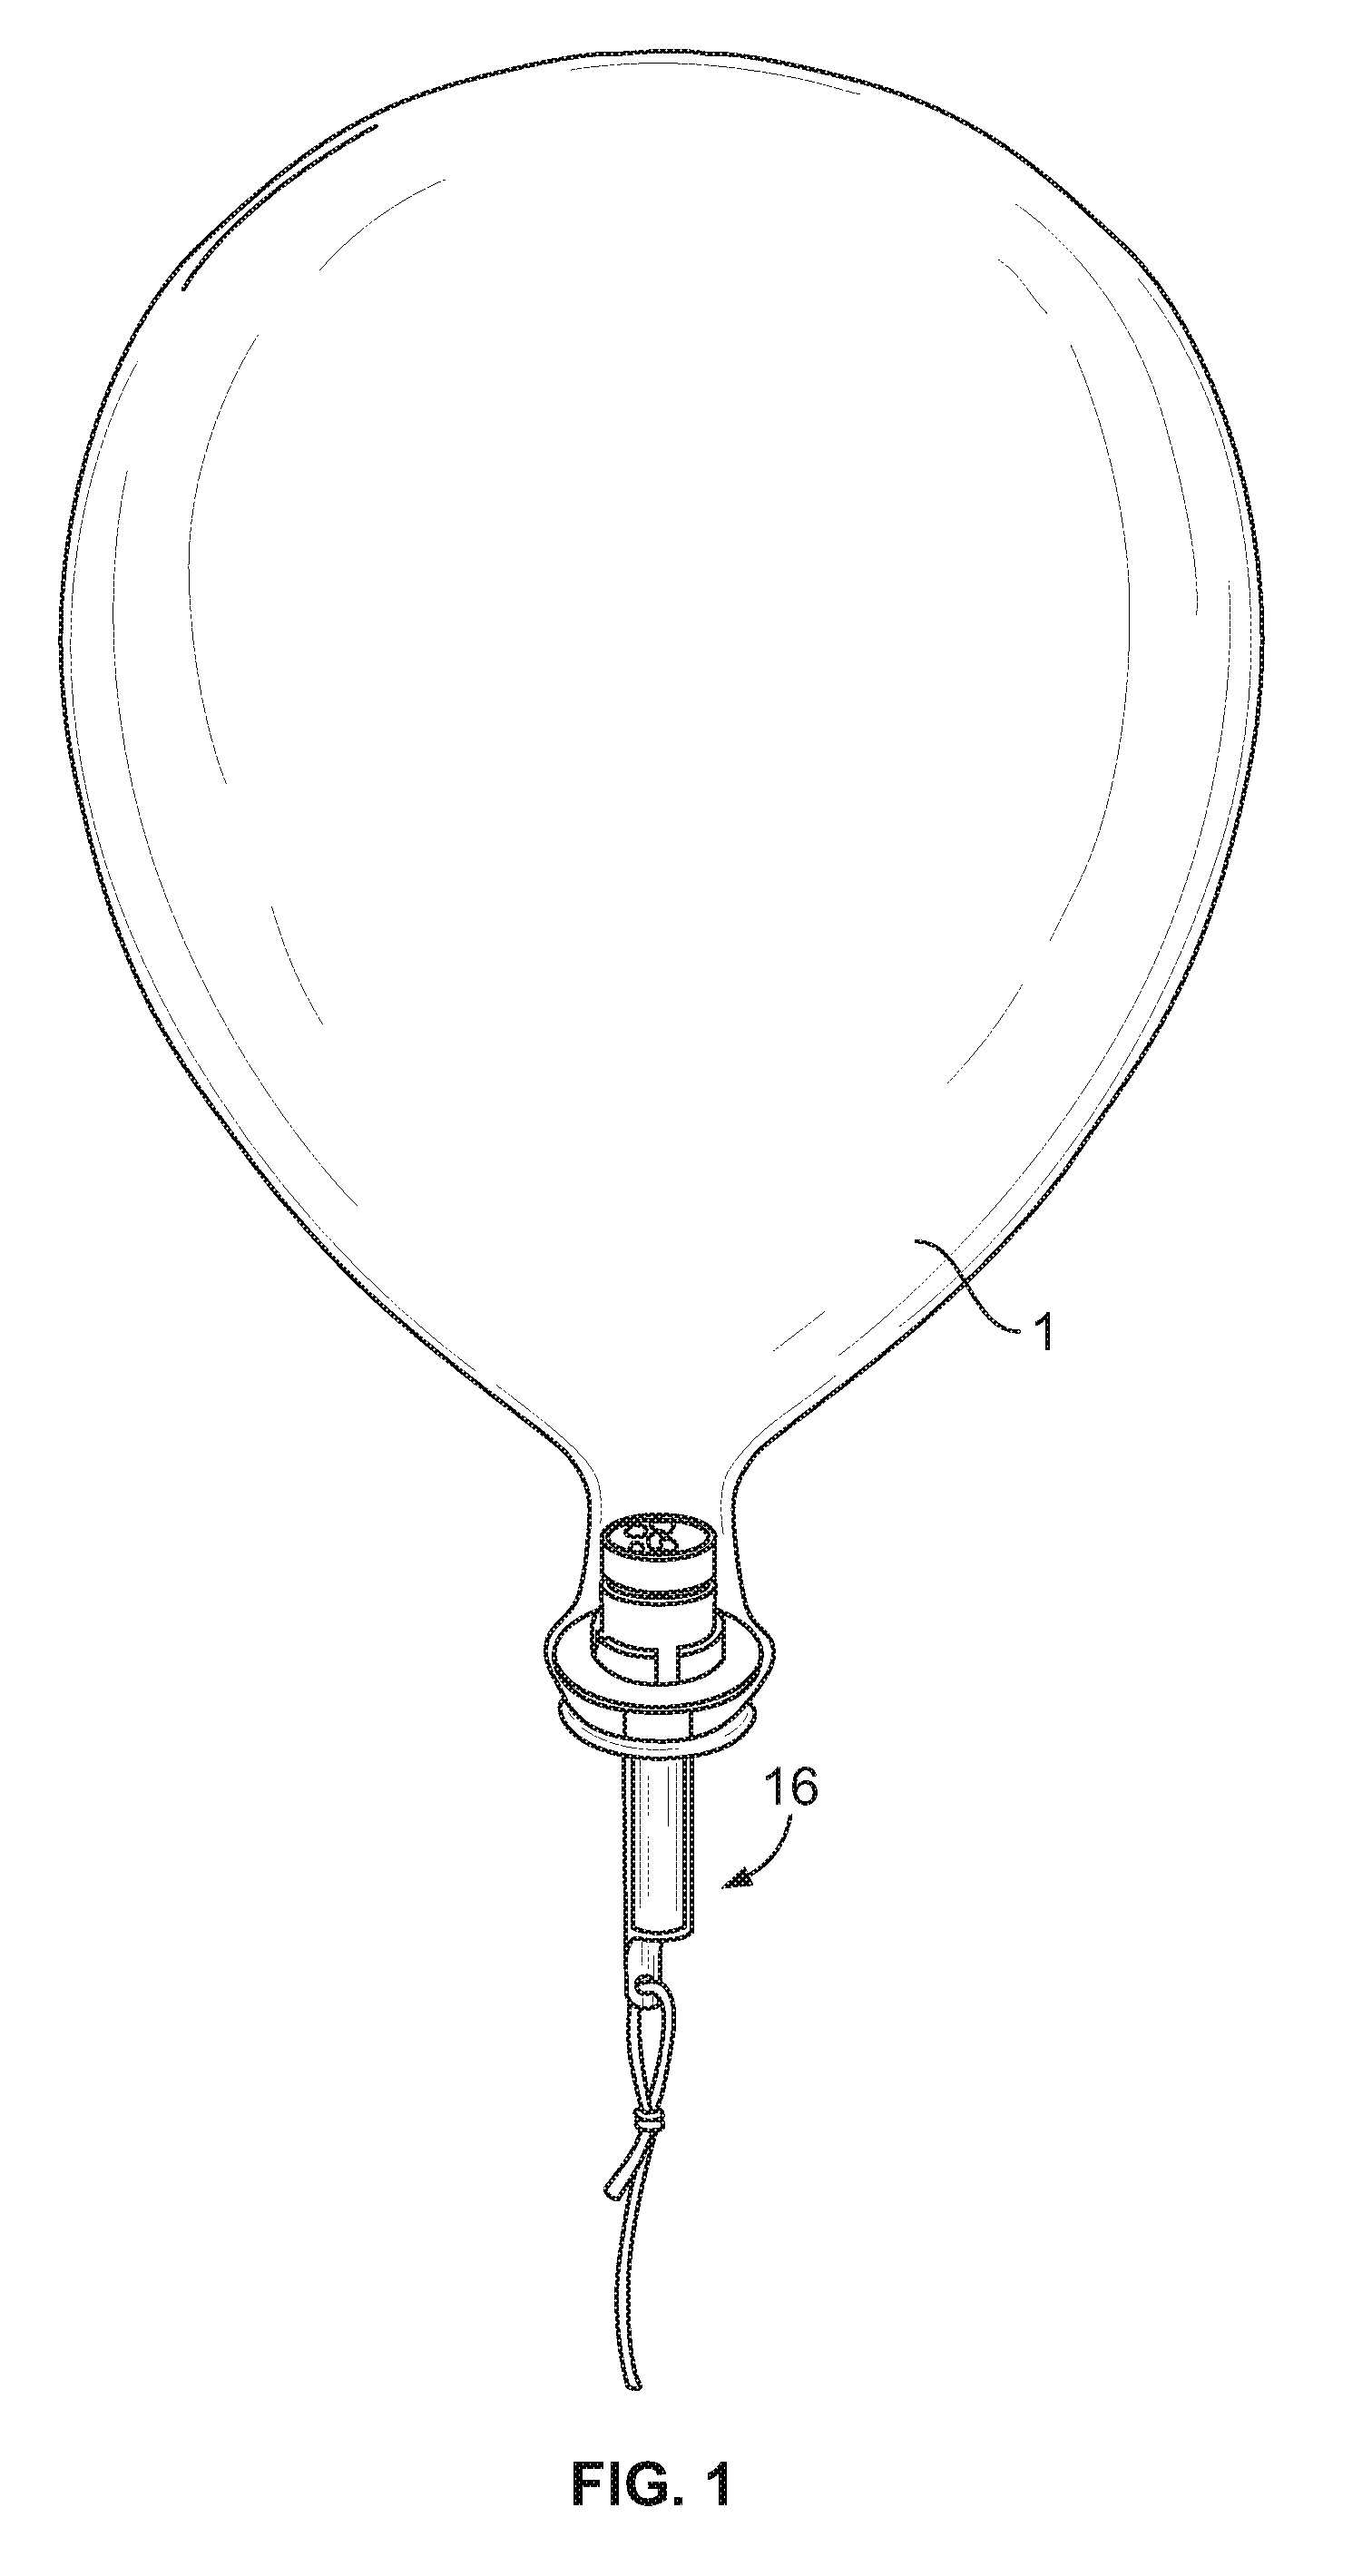 Illuminated toy balloon with stand